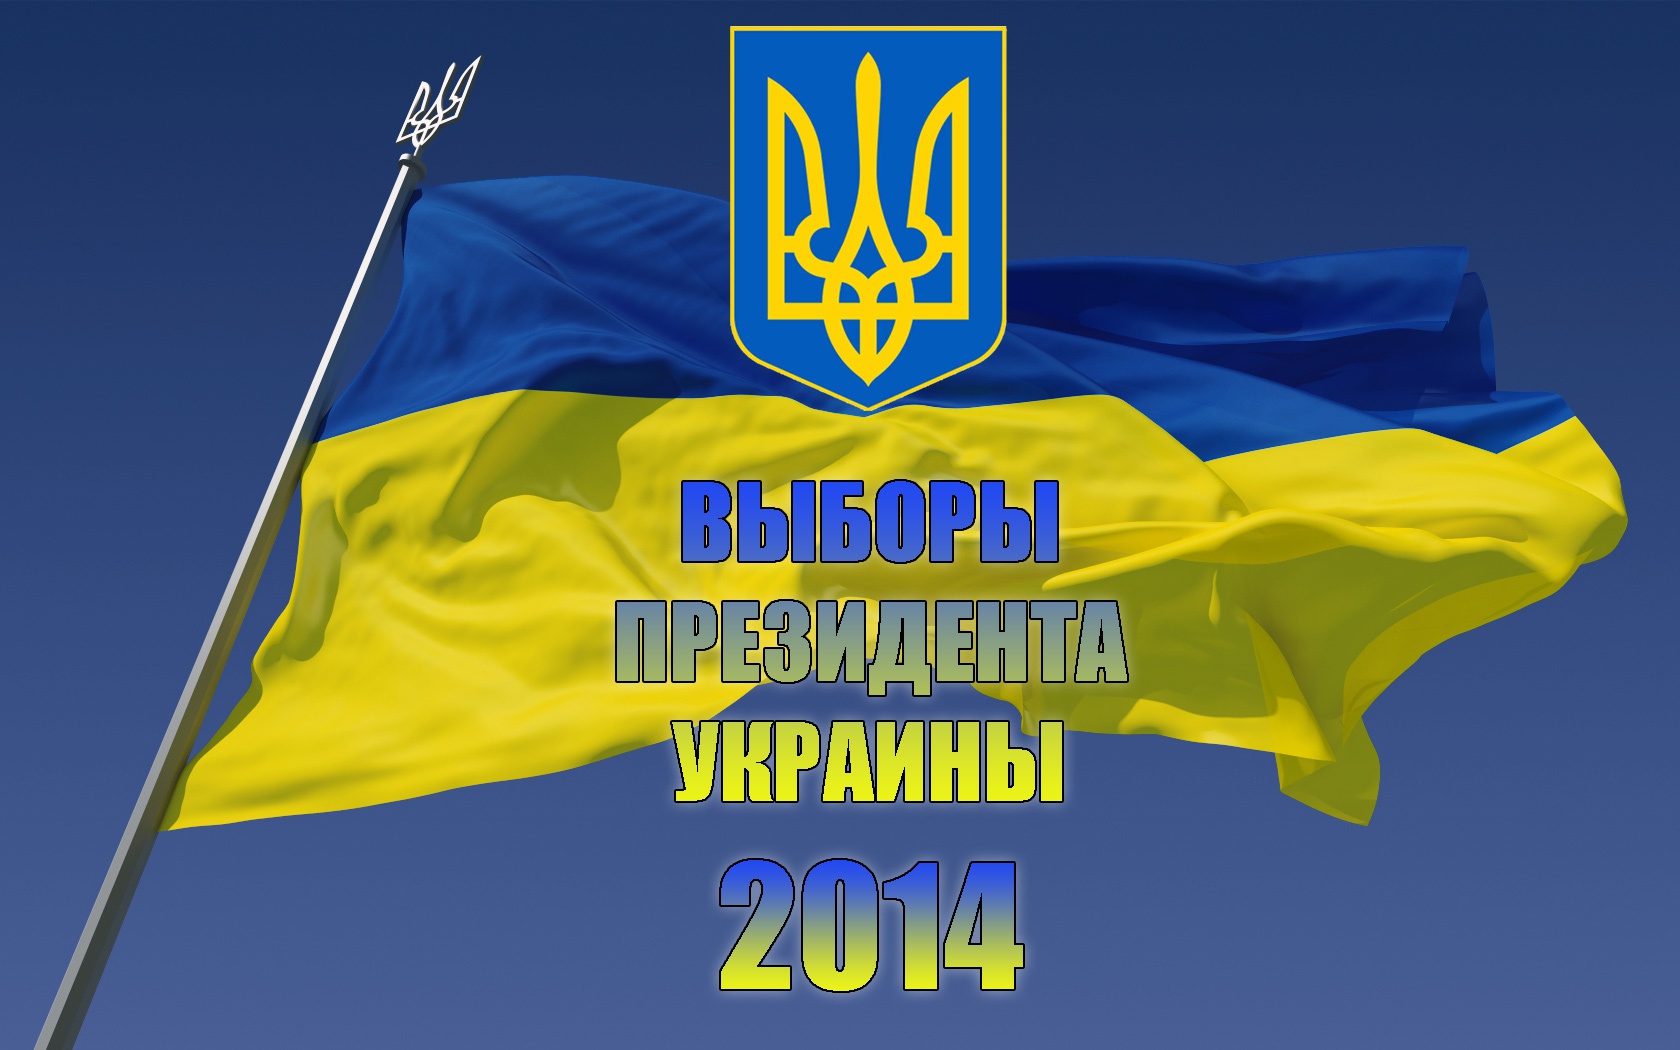 Выборы-2014: На Харьковщине количество нарушений по сравнению с 2010 годом снизилось в 10 раз